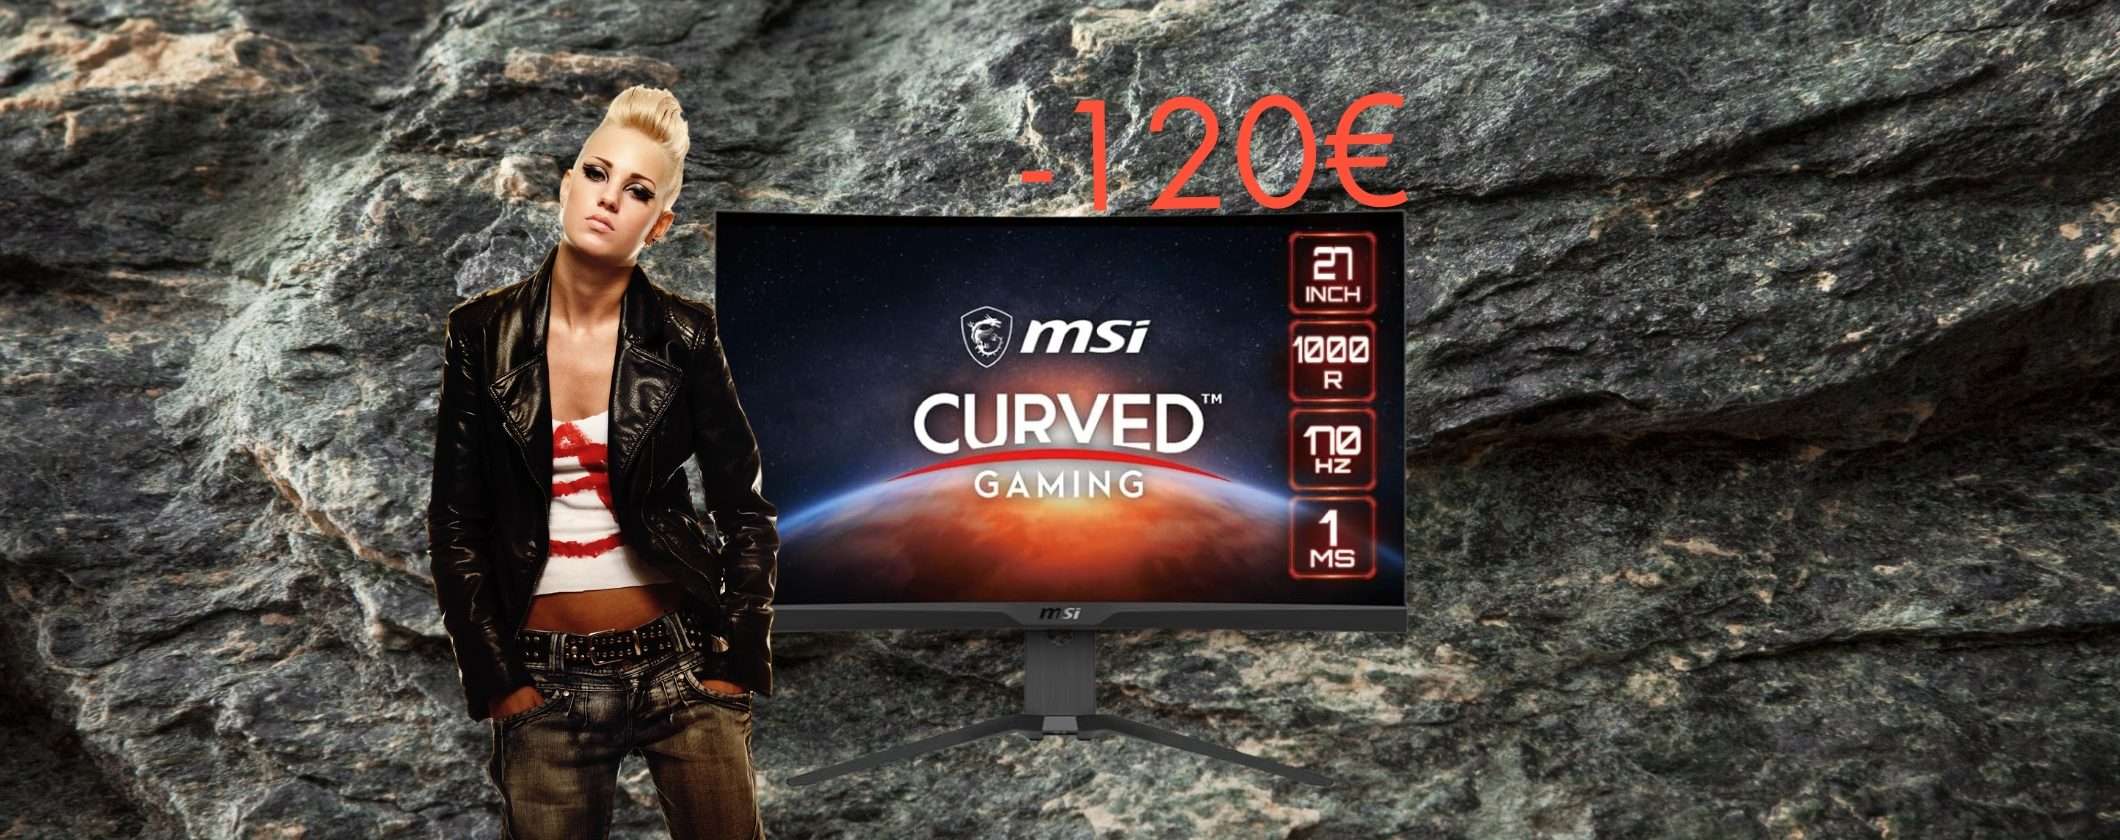 Immersione estrema con il Monitor Gaming Curvo MSI (-120€)